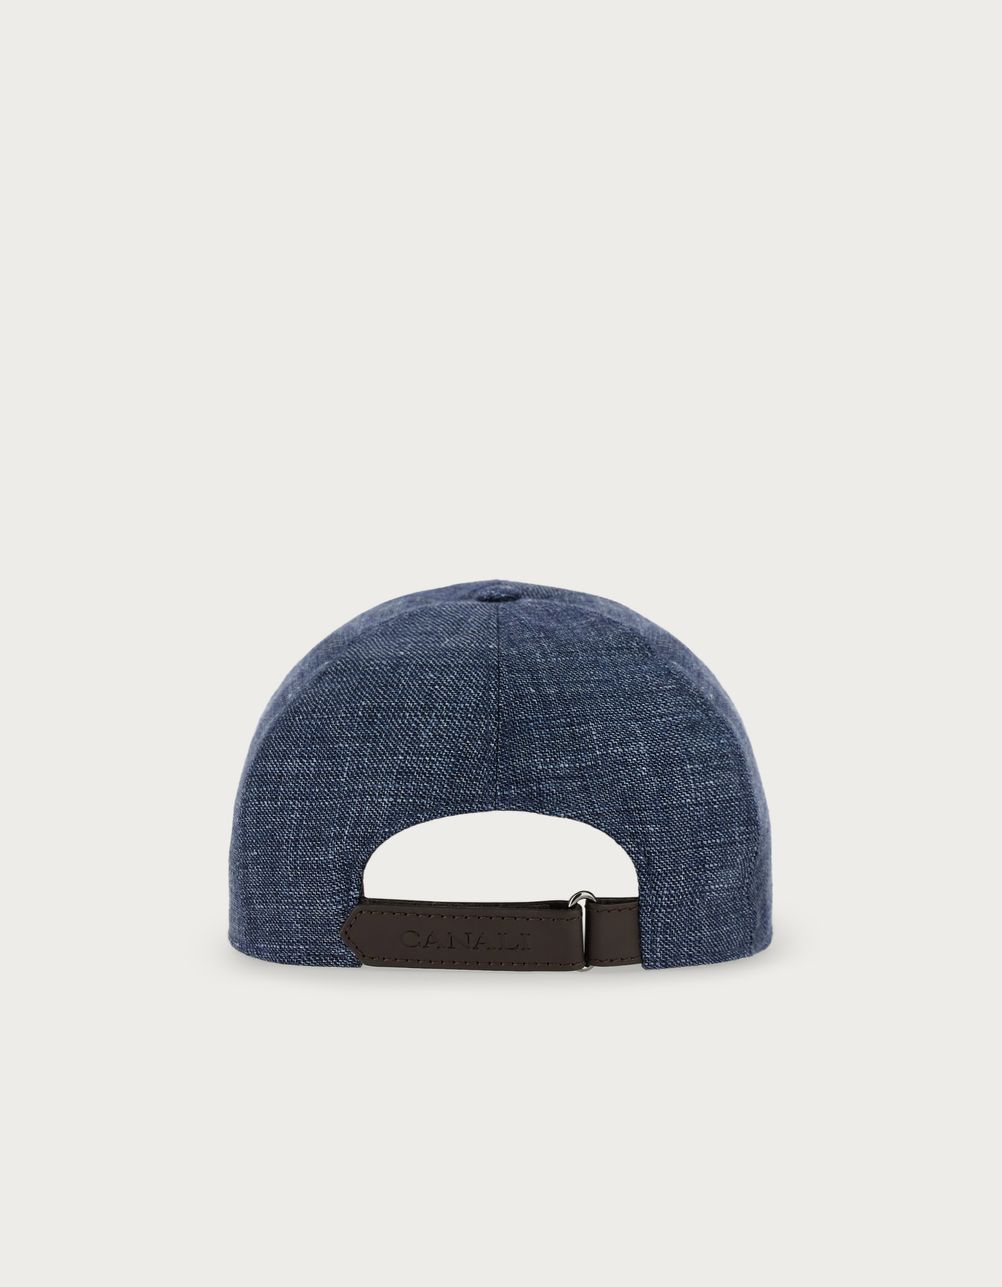 Blue linen and wool baseball cap